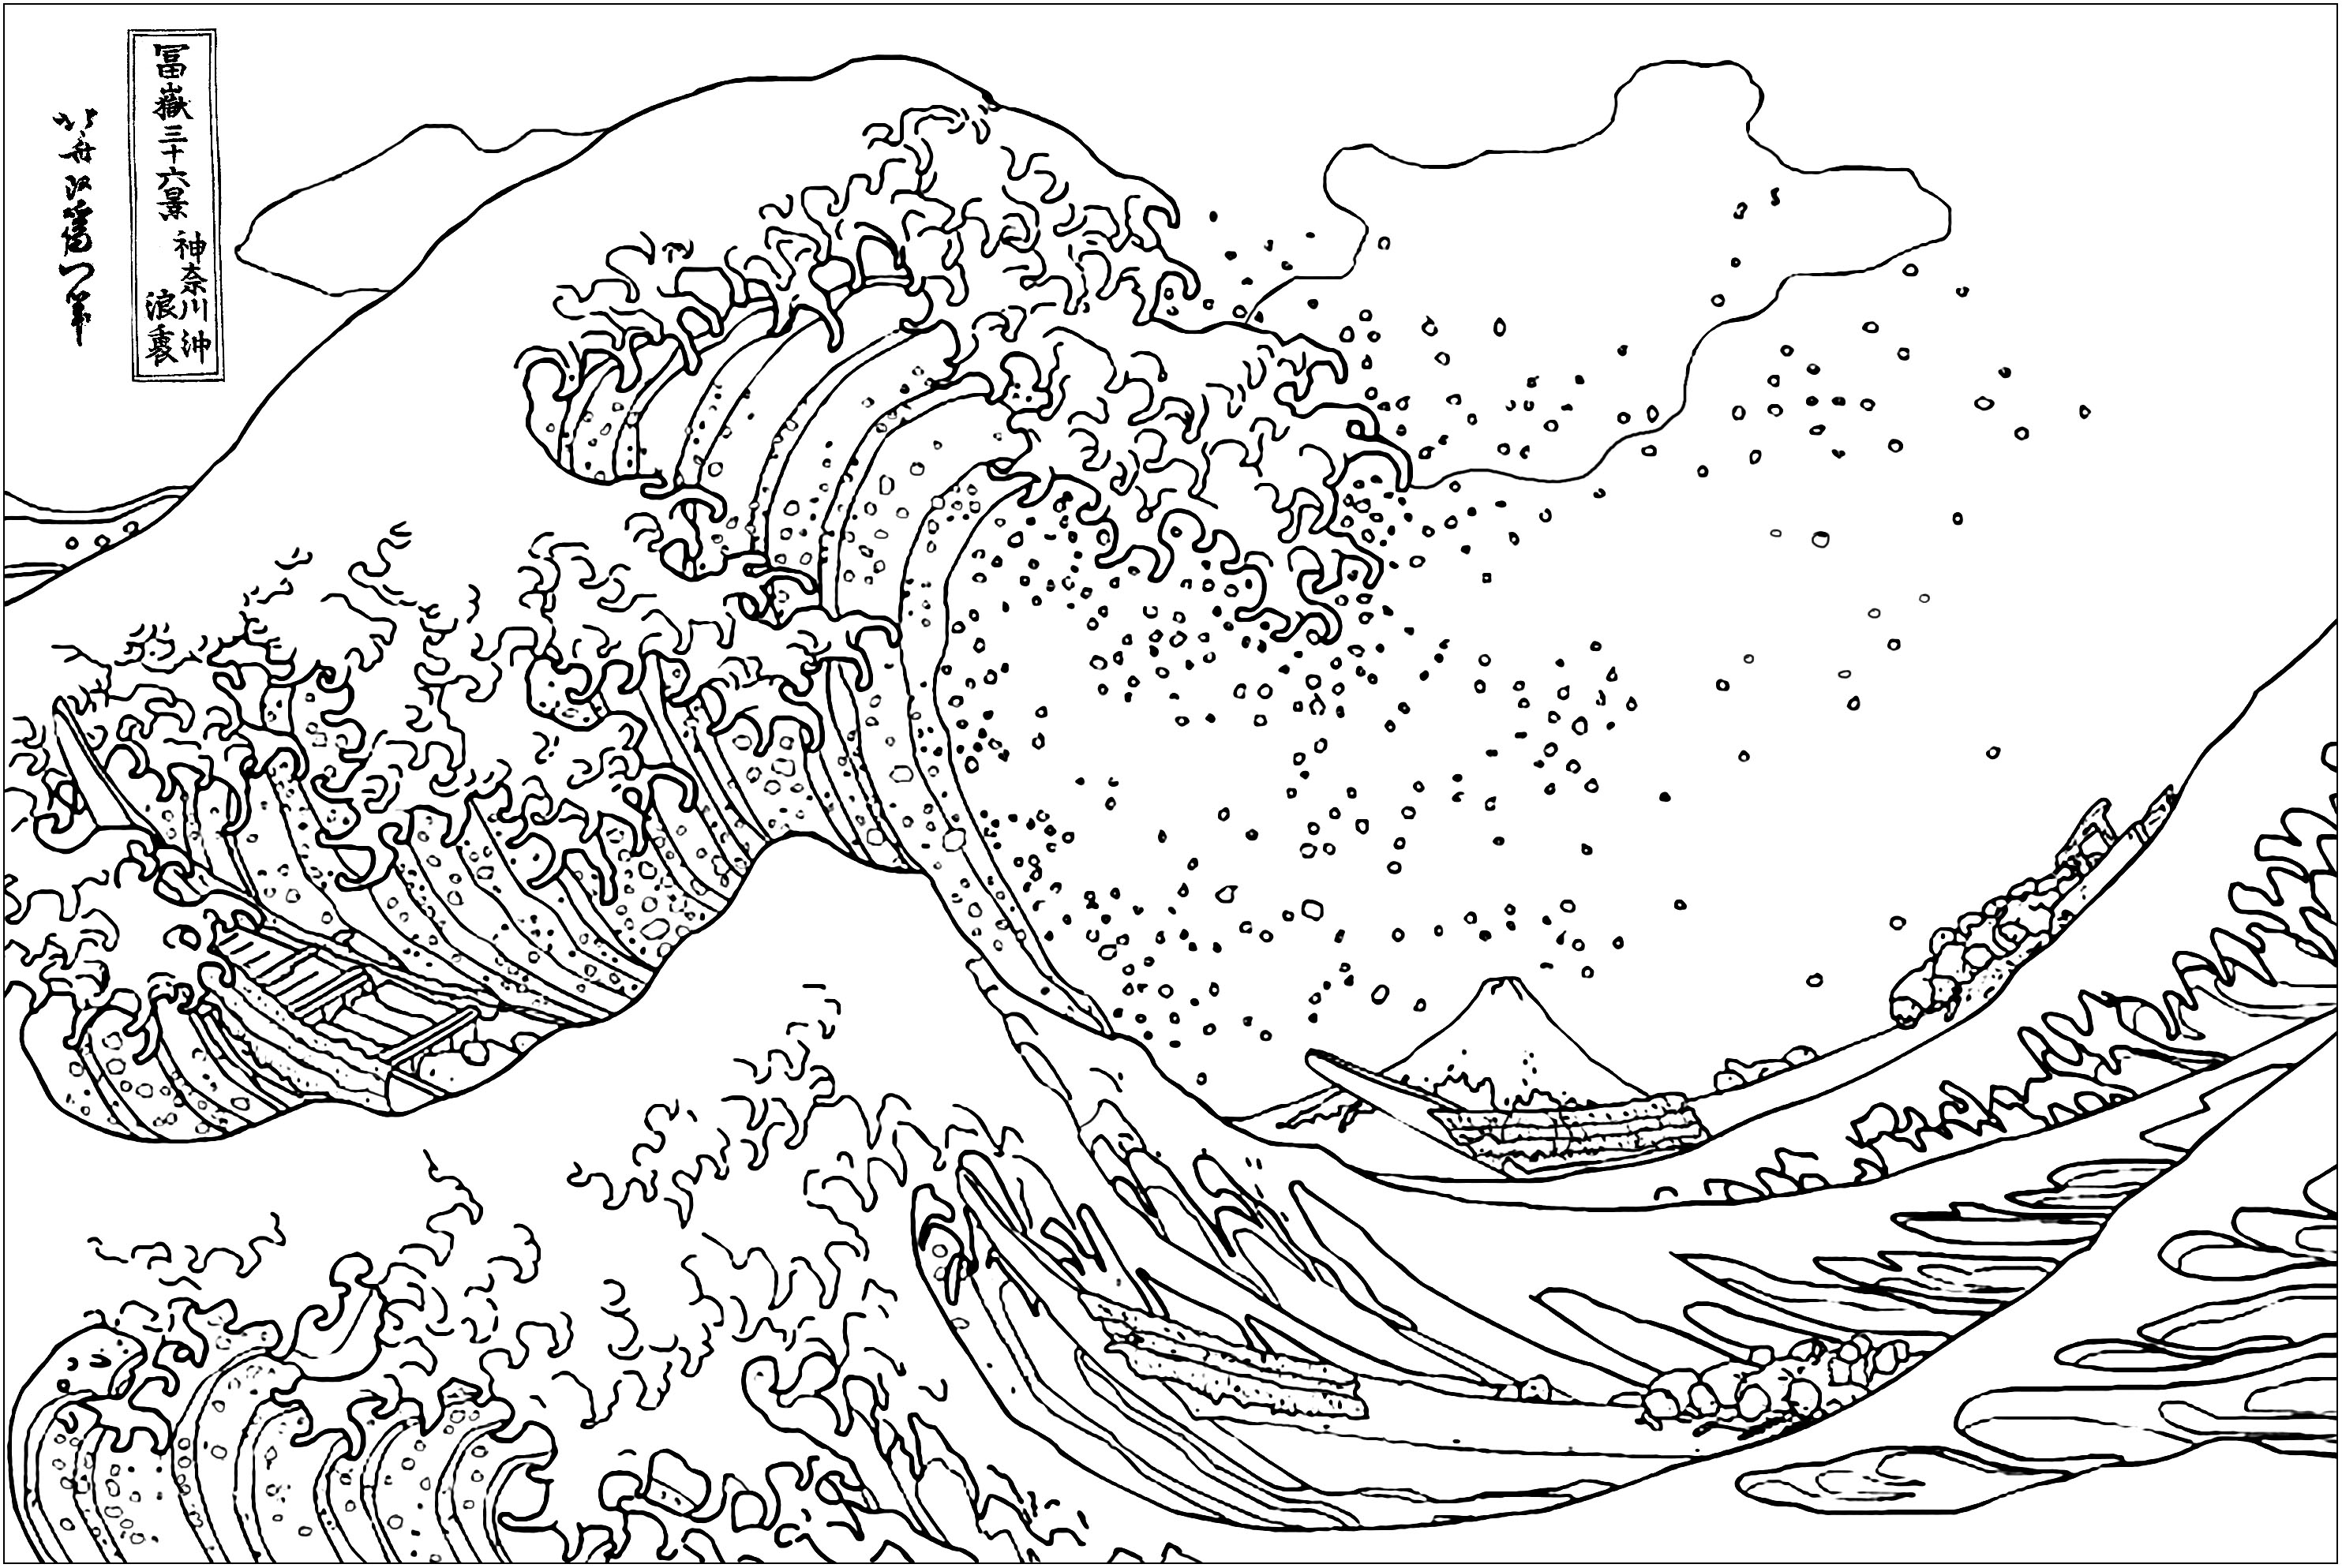 Página para colorir inspirada nesta famosa gravura em xilogravura do artista japonês Ukiyo-e Hokusai em 1829-1832. 'A Grande Onda ao largo de Kanagawa' apresenta uma onda gigantesca com o Monte Fuji como pano de fundo, representando o fascínio de Hokusai pelo poder e beleza da natureza.Esta obra-prima é caracterizada pelos seus tons azuis vivos e pelo intrincado estilo ukiyo-e, que cativam os espectadores com a sua estética marcante e atenção ao pormenor, Artista : Art'Isabelle